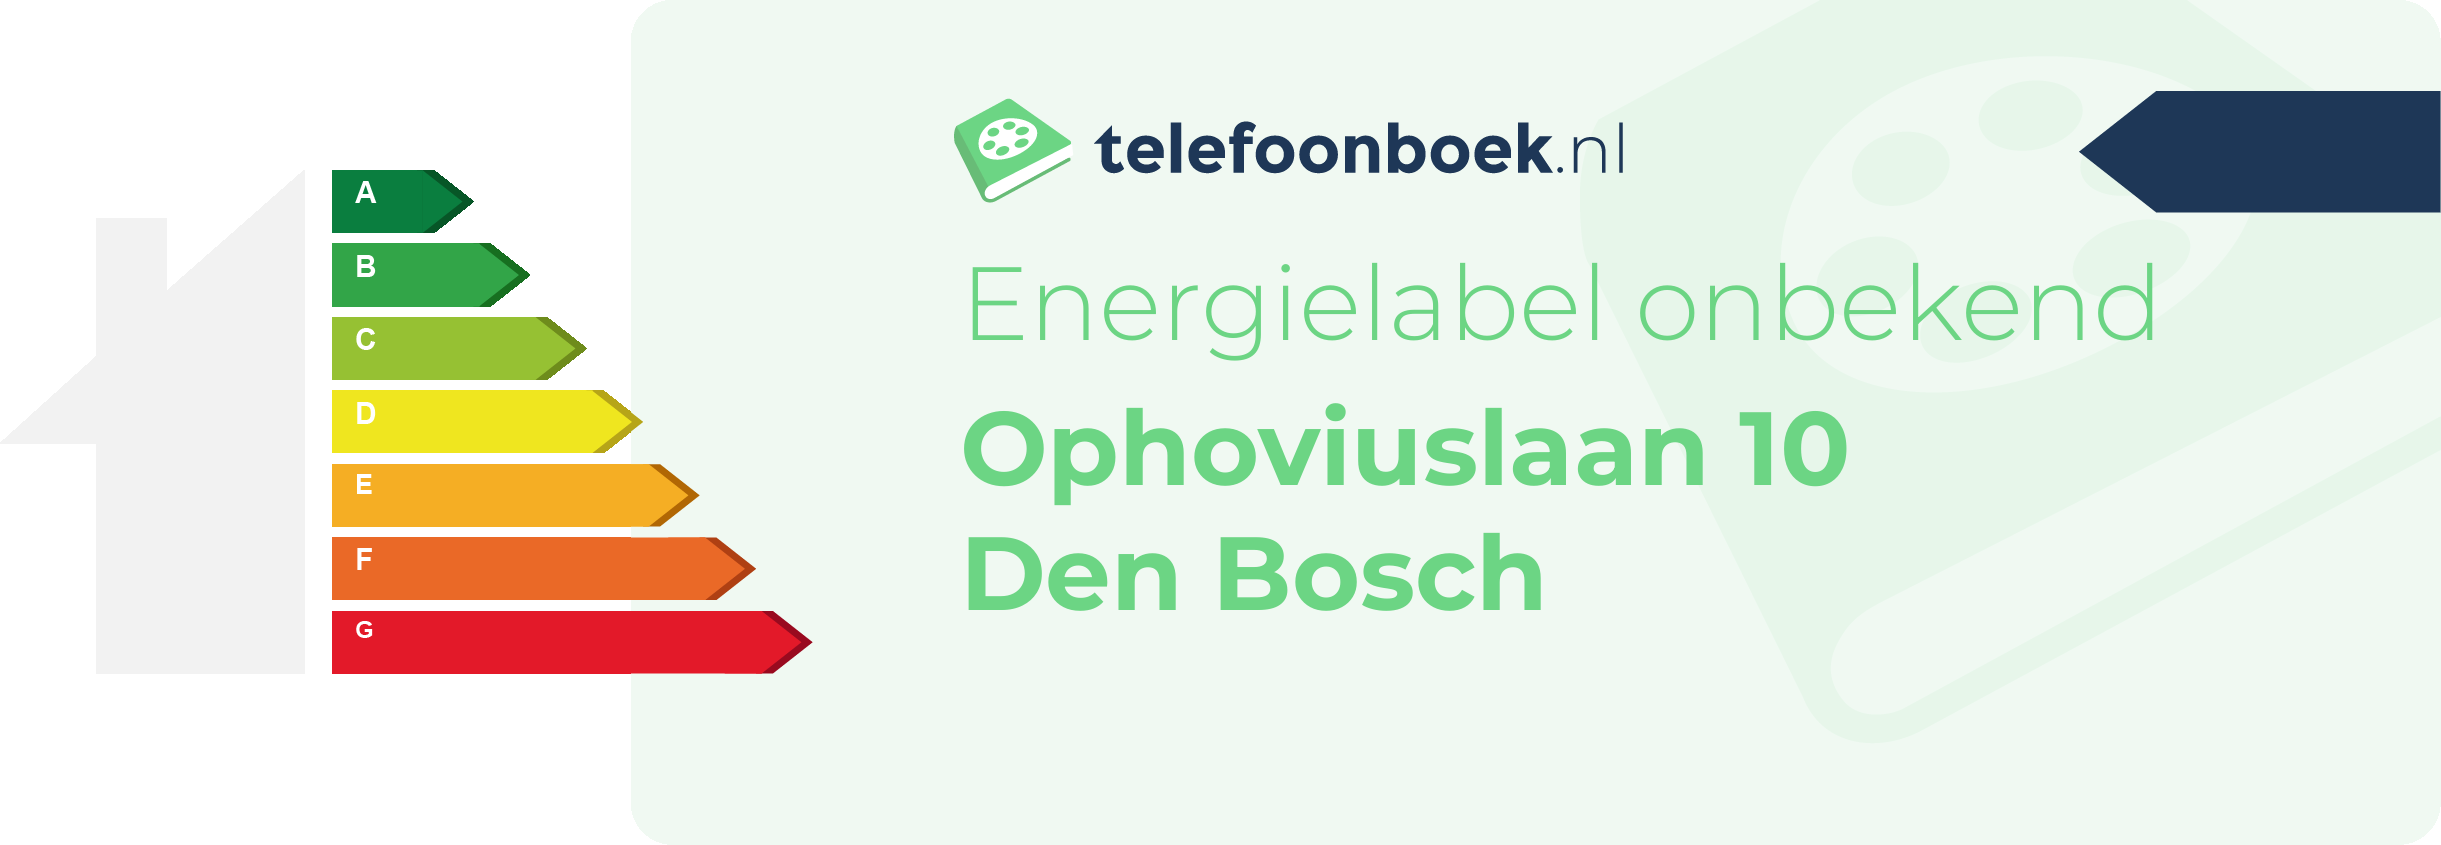 Energielabel Ophoviuslaan 10 Den Bosch